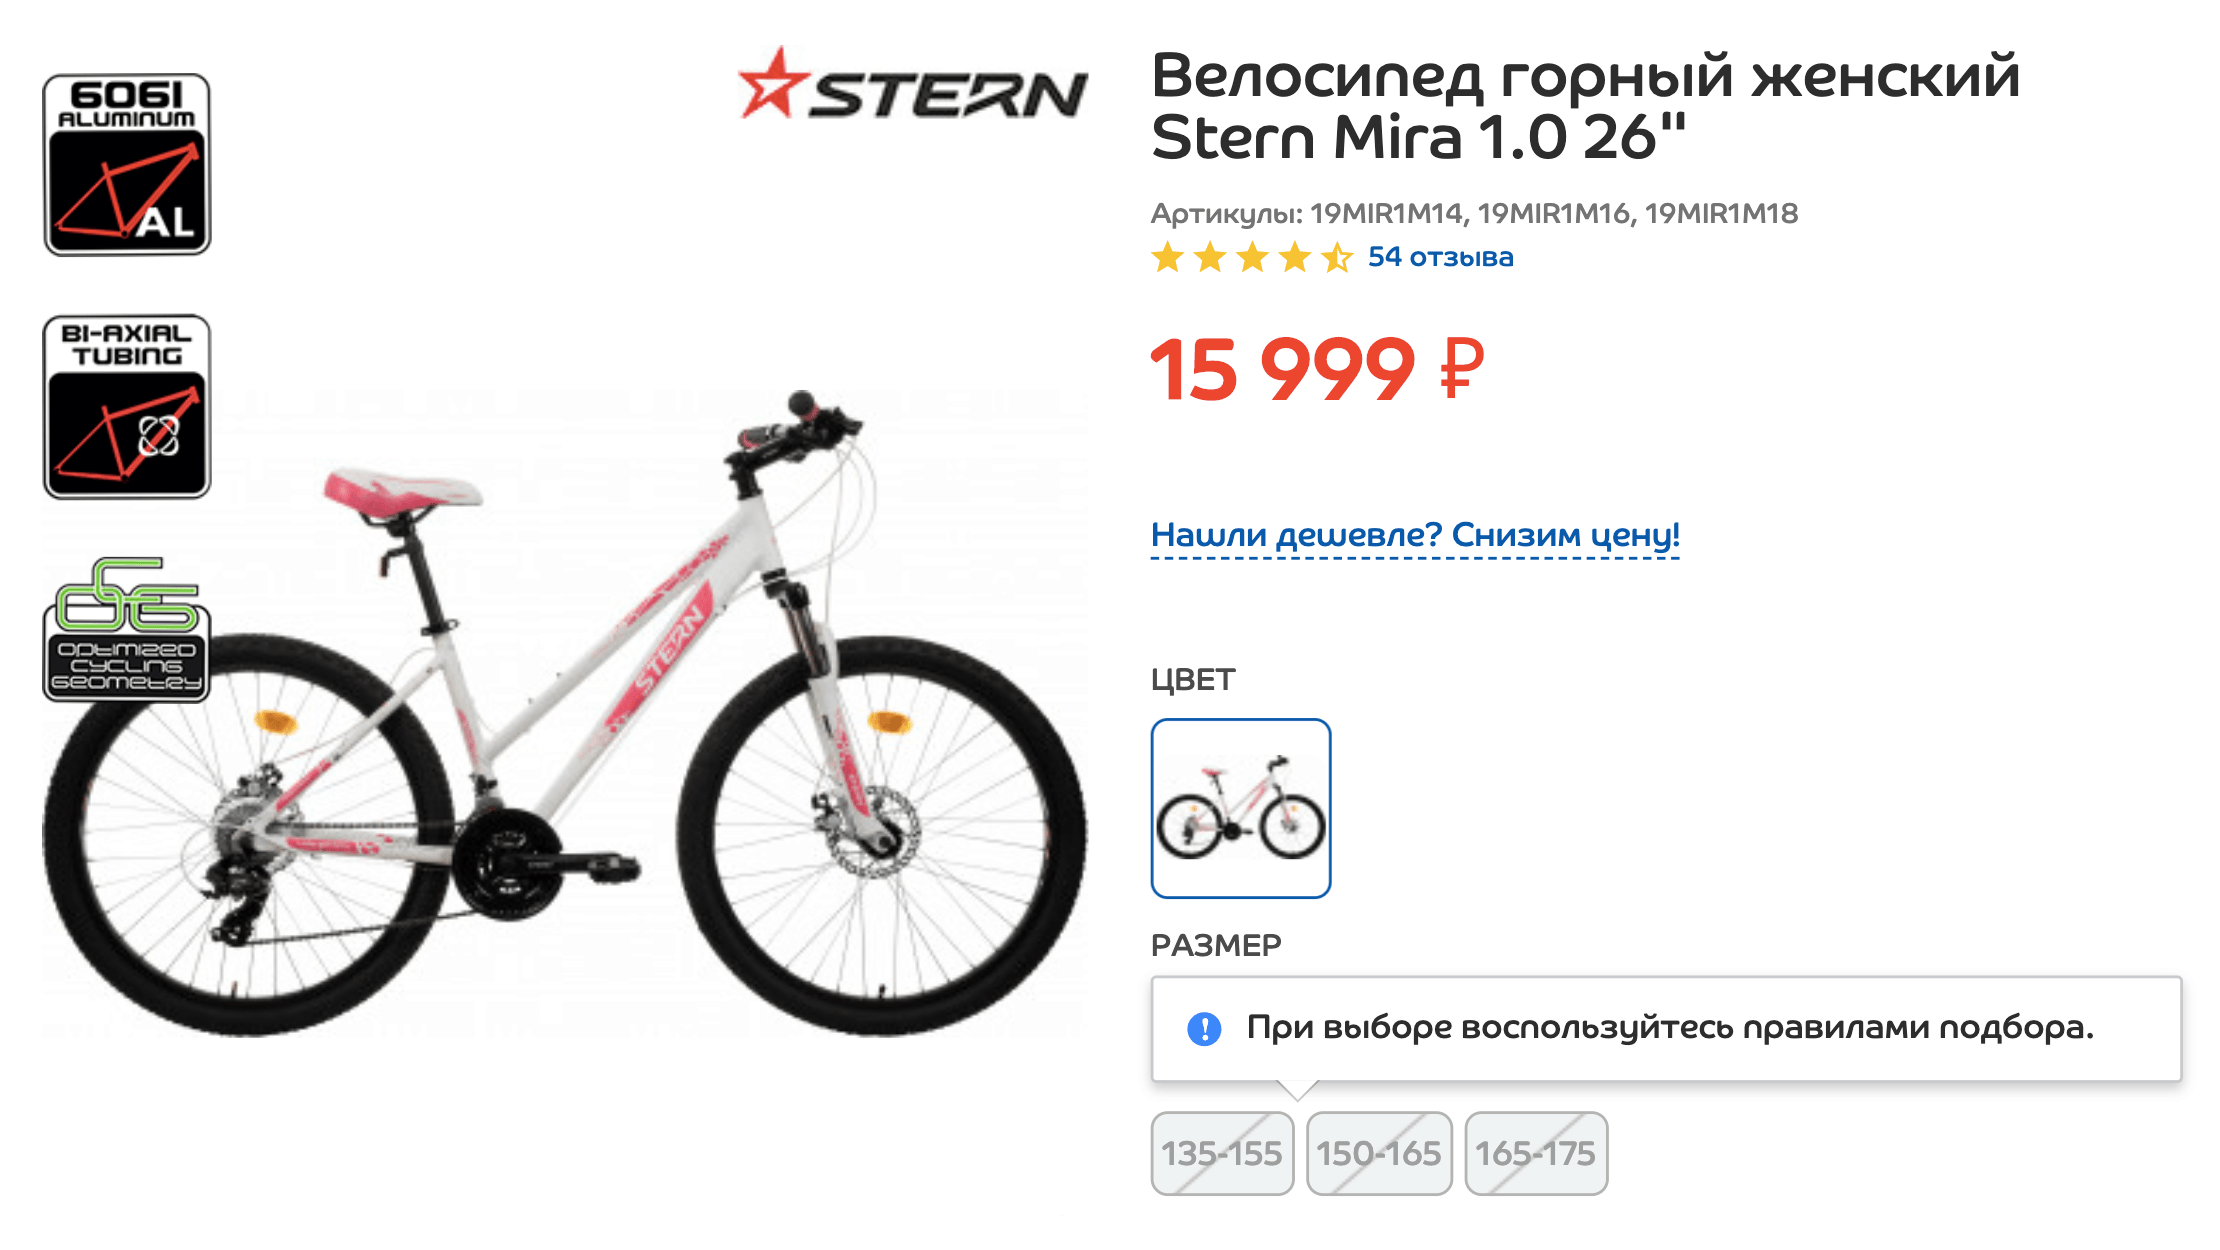 Велосипед стоит 16 000 ₽, но 30% от стоимости я оплачу бонусами. Получится 11 200 ₽